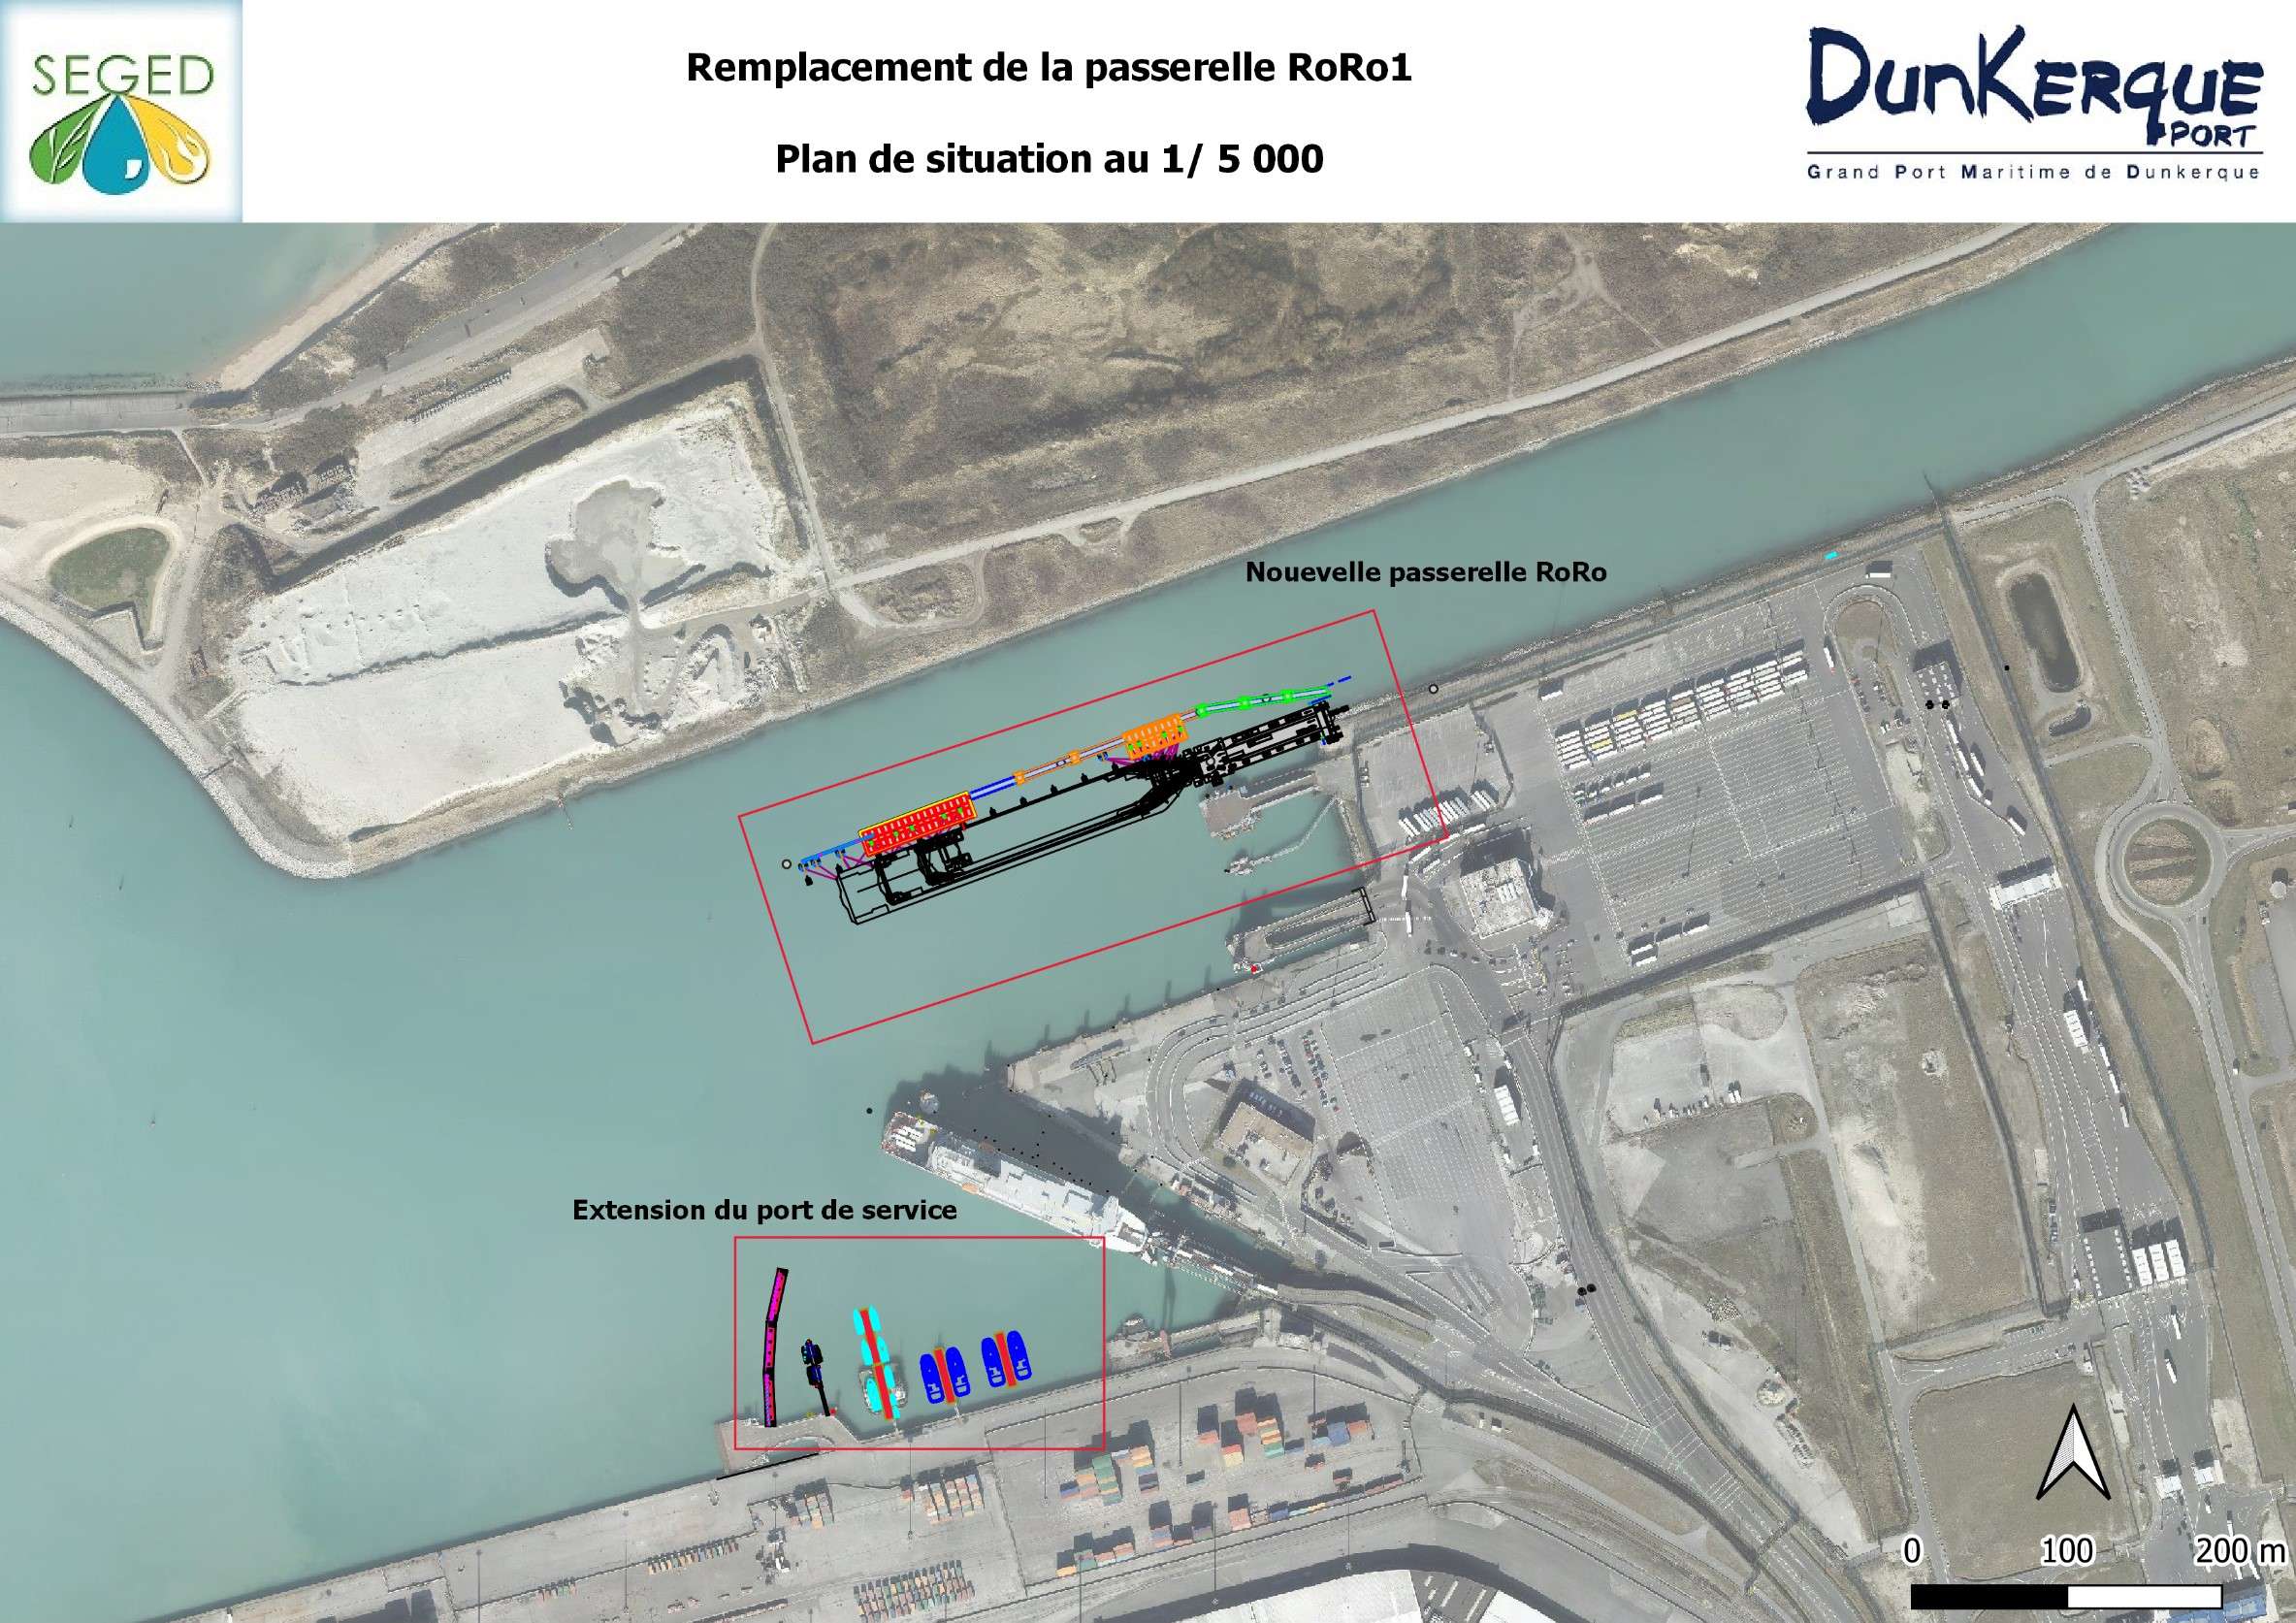   projet de remplacement du poste Transmanche RoRo1 du port Ouest de Dunkerque